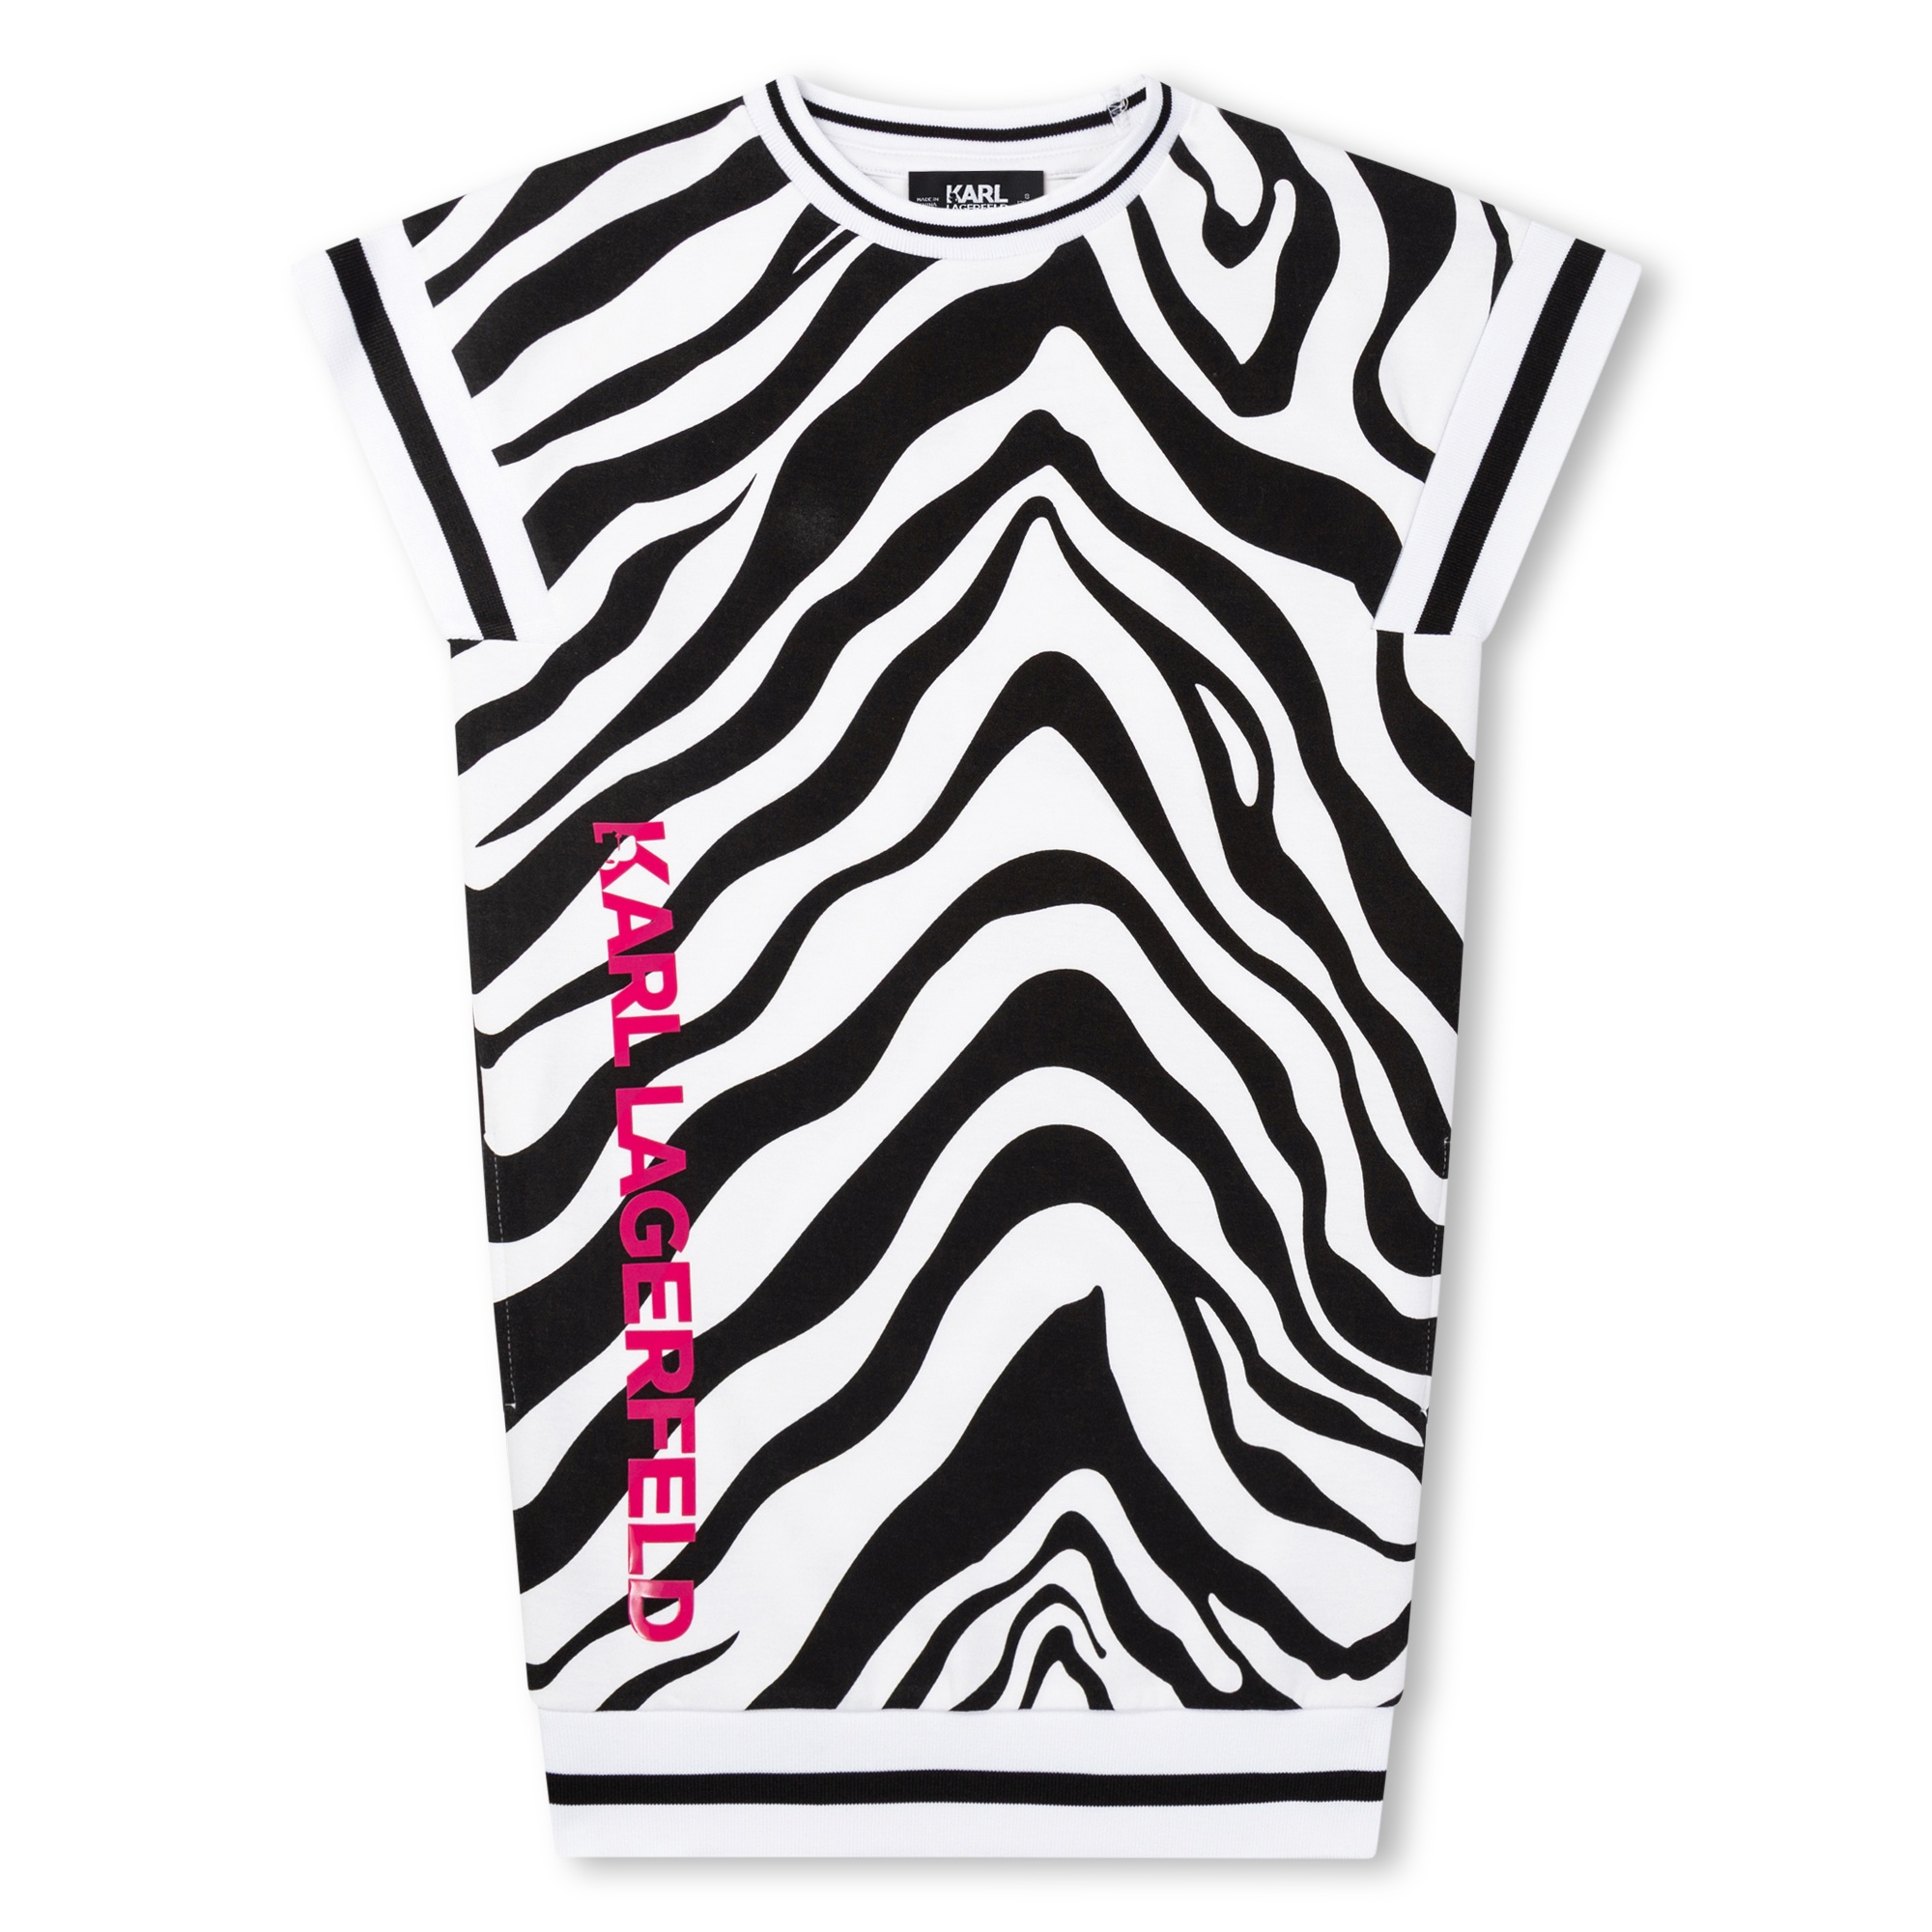 Zebra-print jumper dress KARL LAGERFELD KIDS for GIRL